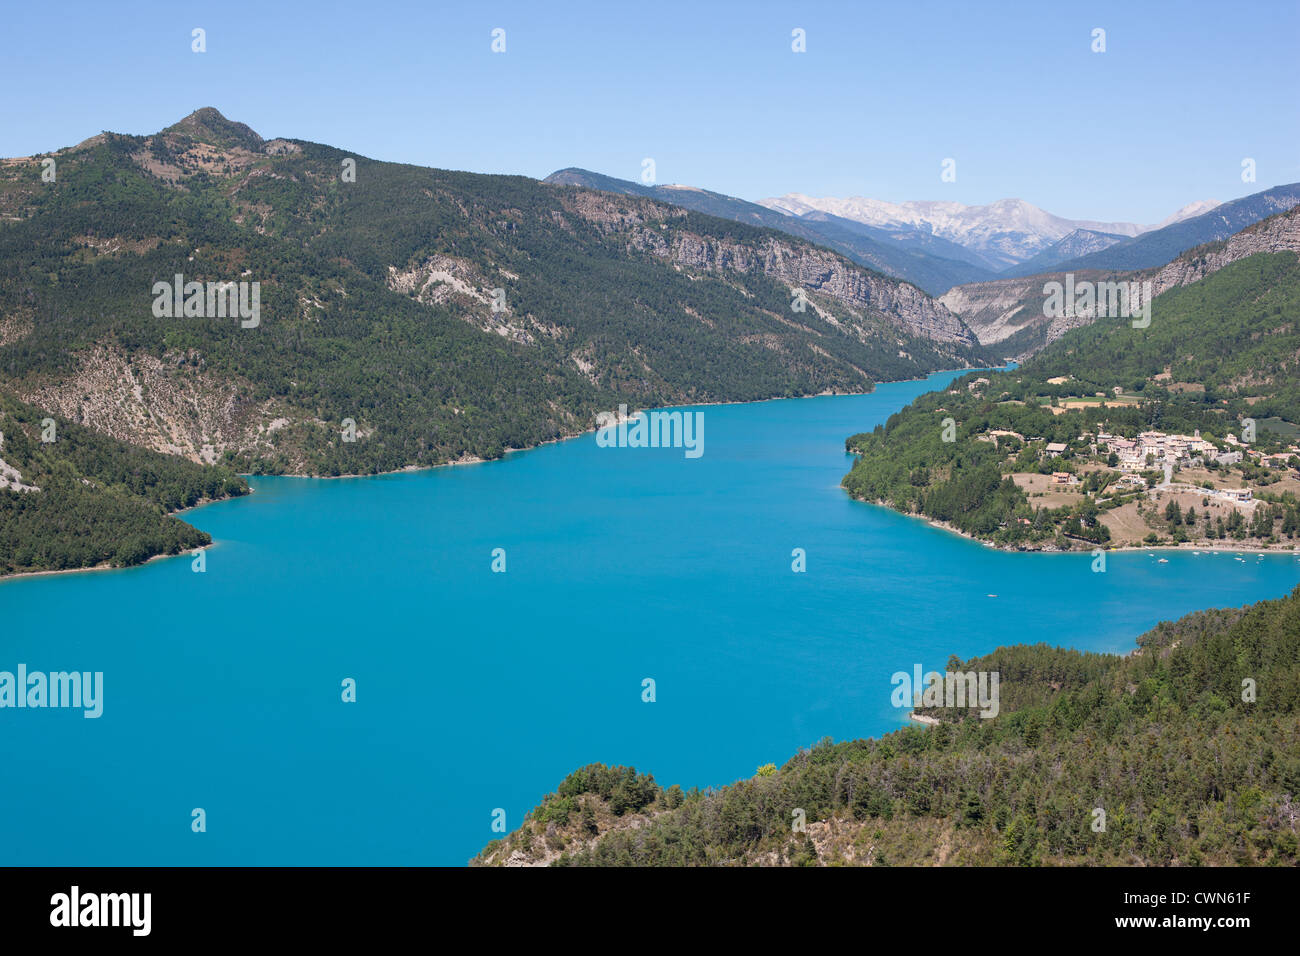 Lake Castillon and the picturesque village of Saint-Julien-du-Verdon. Verdon Valley, Alpes-de-Haute-Provence, Provence, France. Stock Photo